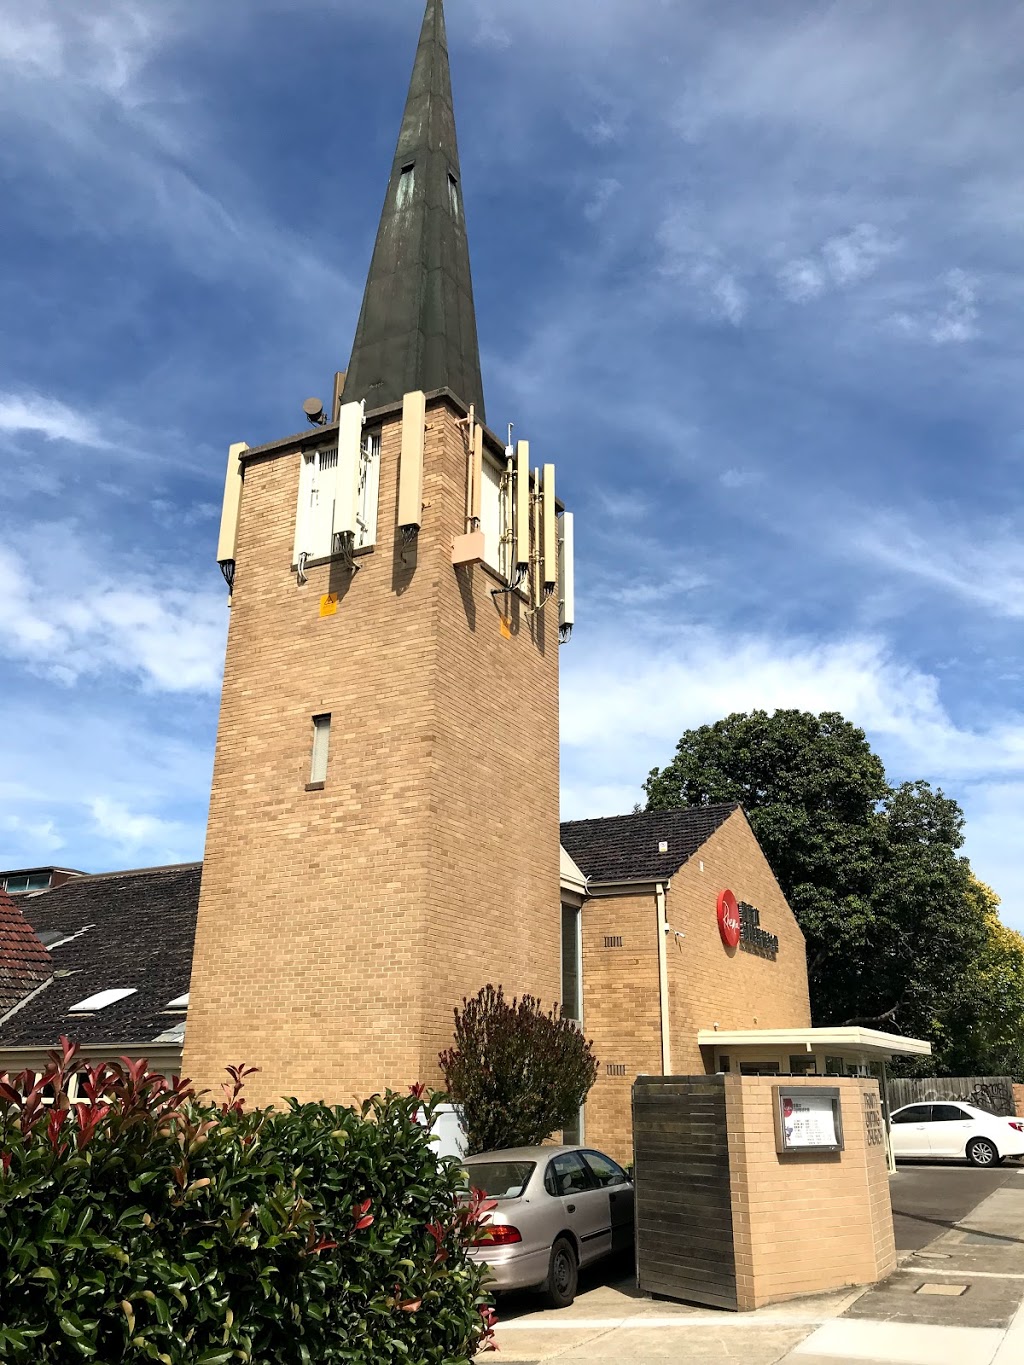 約明教會 | church | 172-174 Doncaster Rd, Balwyn North VIC 3104, Australia